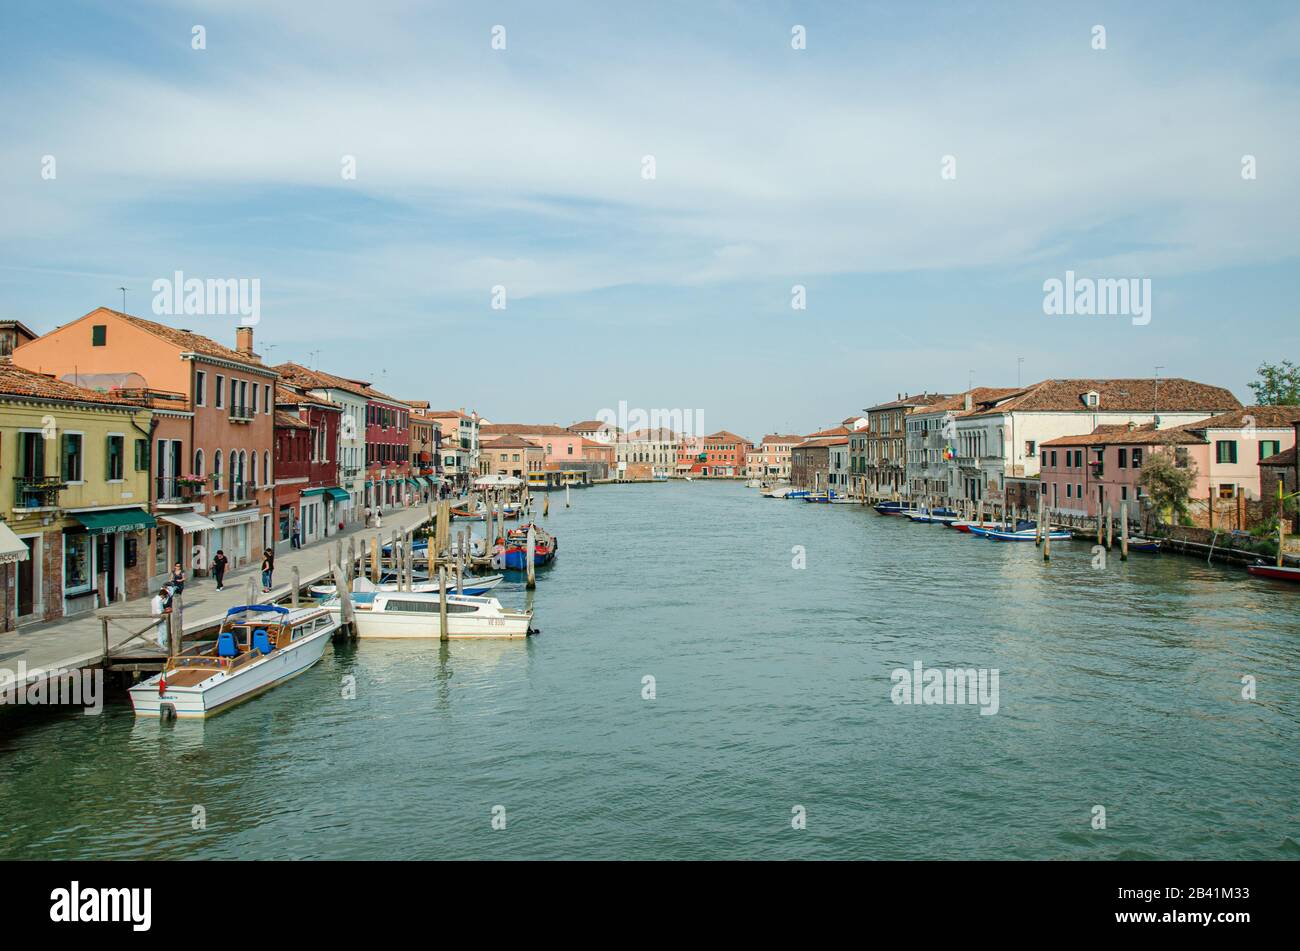 Venezia, Italia 18 maggio 2015: Vista dei bellissimi canali e delle barche ormeggiate lungo le passerelle di Venezia Foto Stock